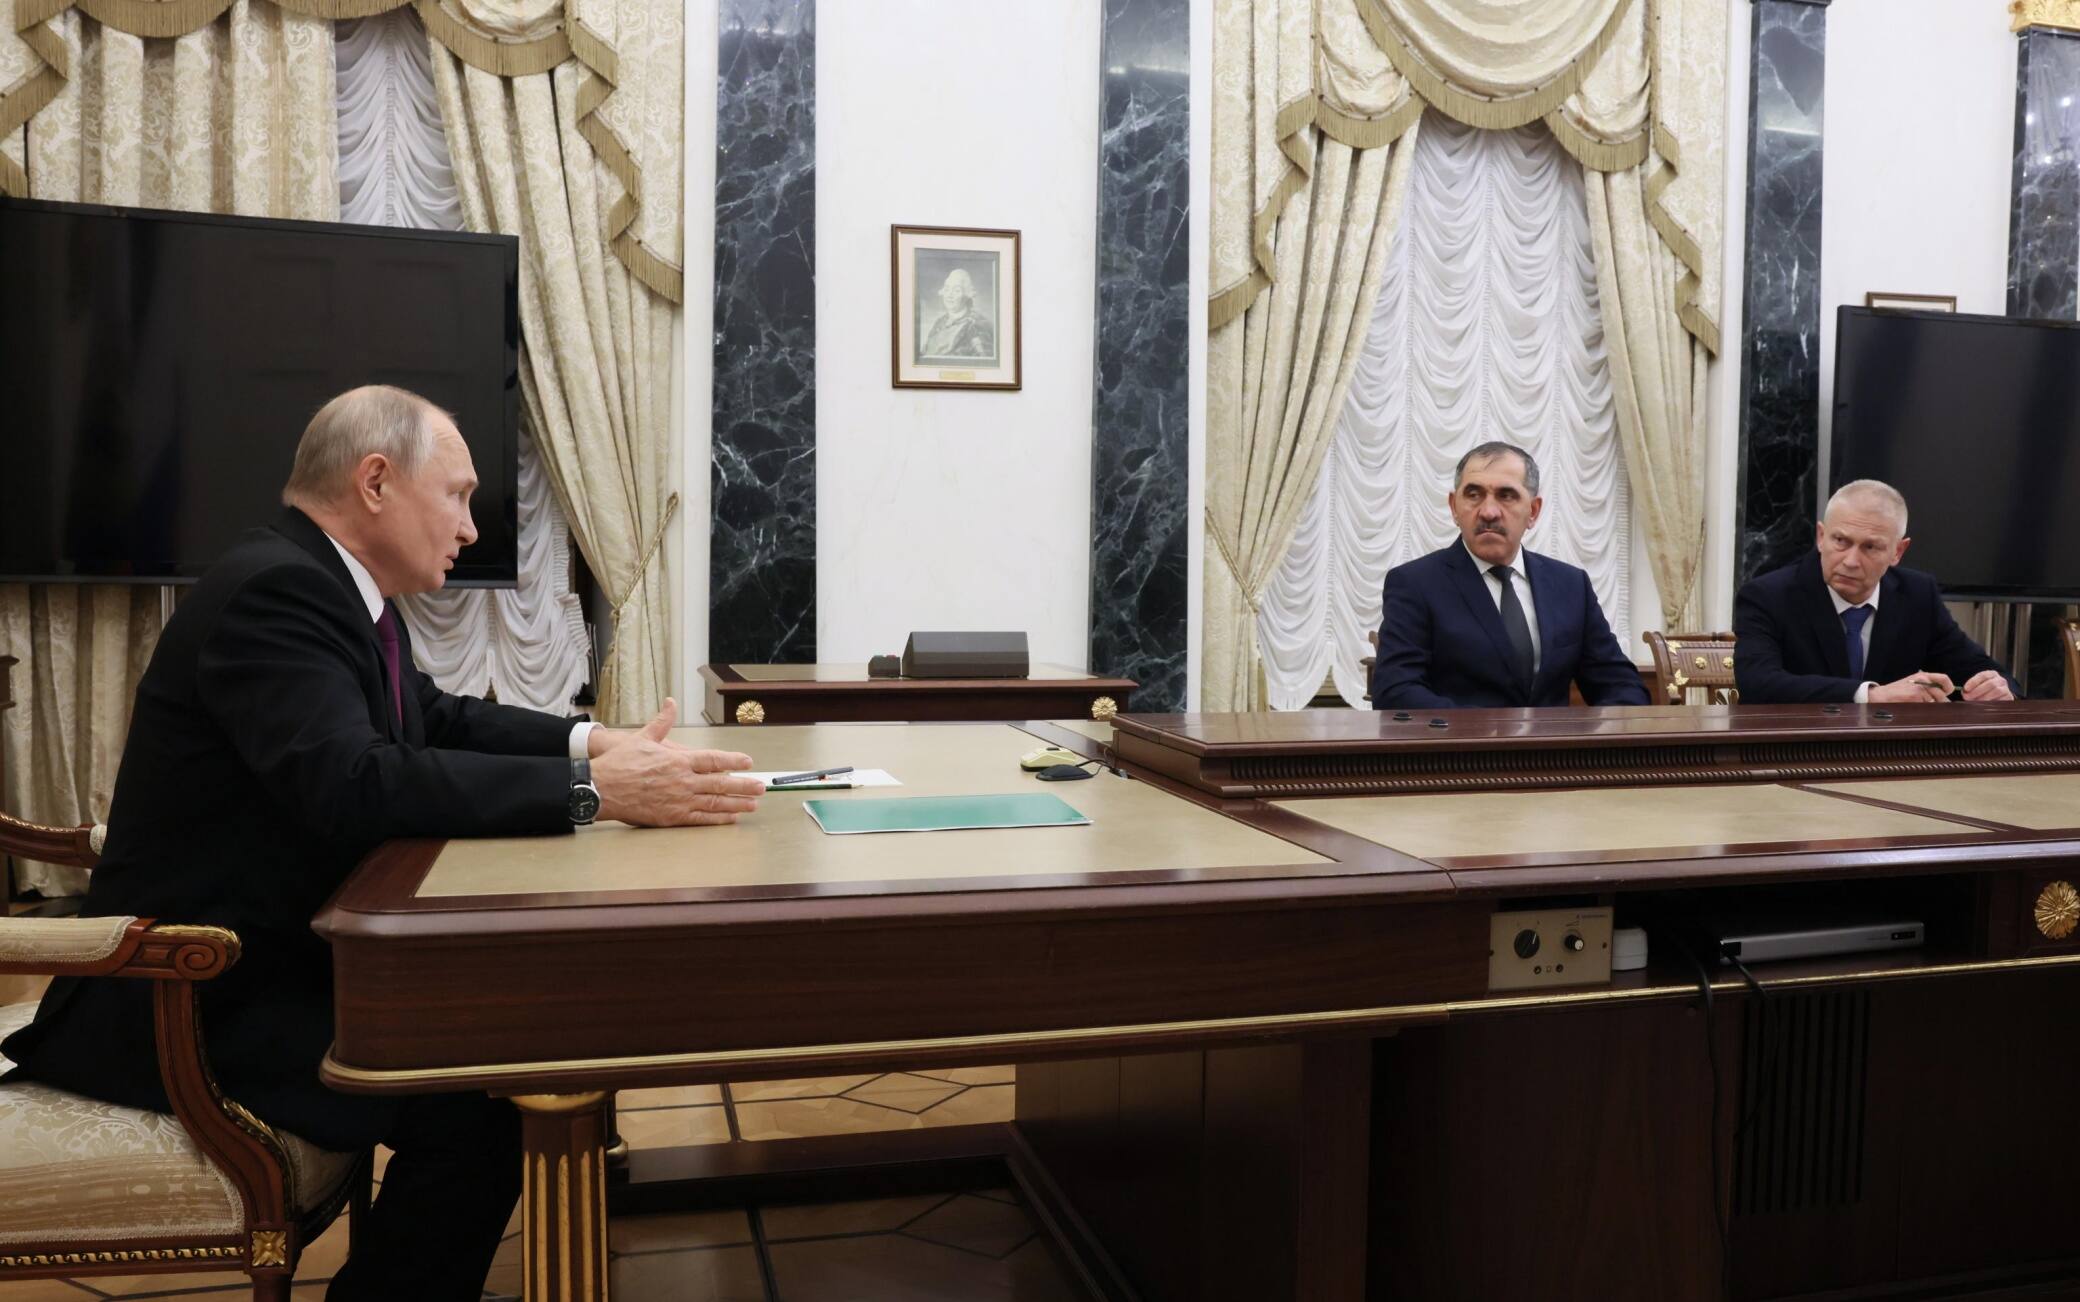 L'incontro di Putin con Troshev (è l'ultimo a destra)